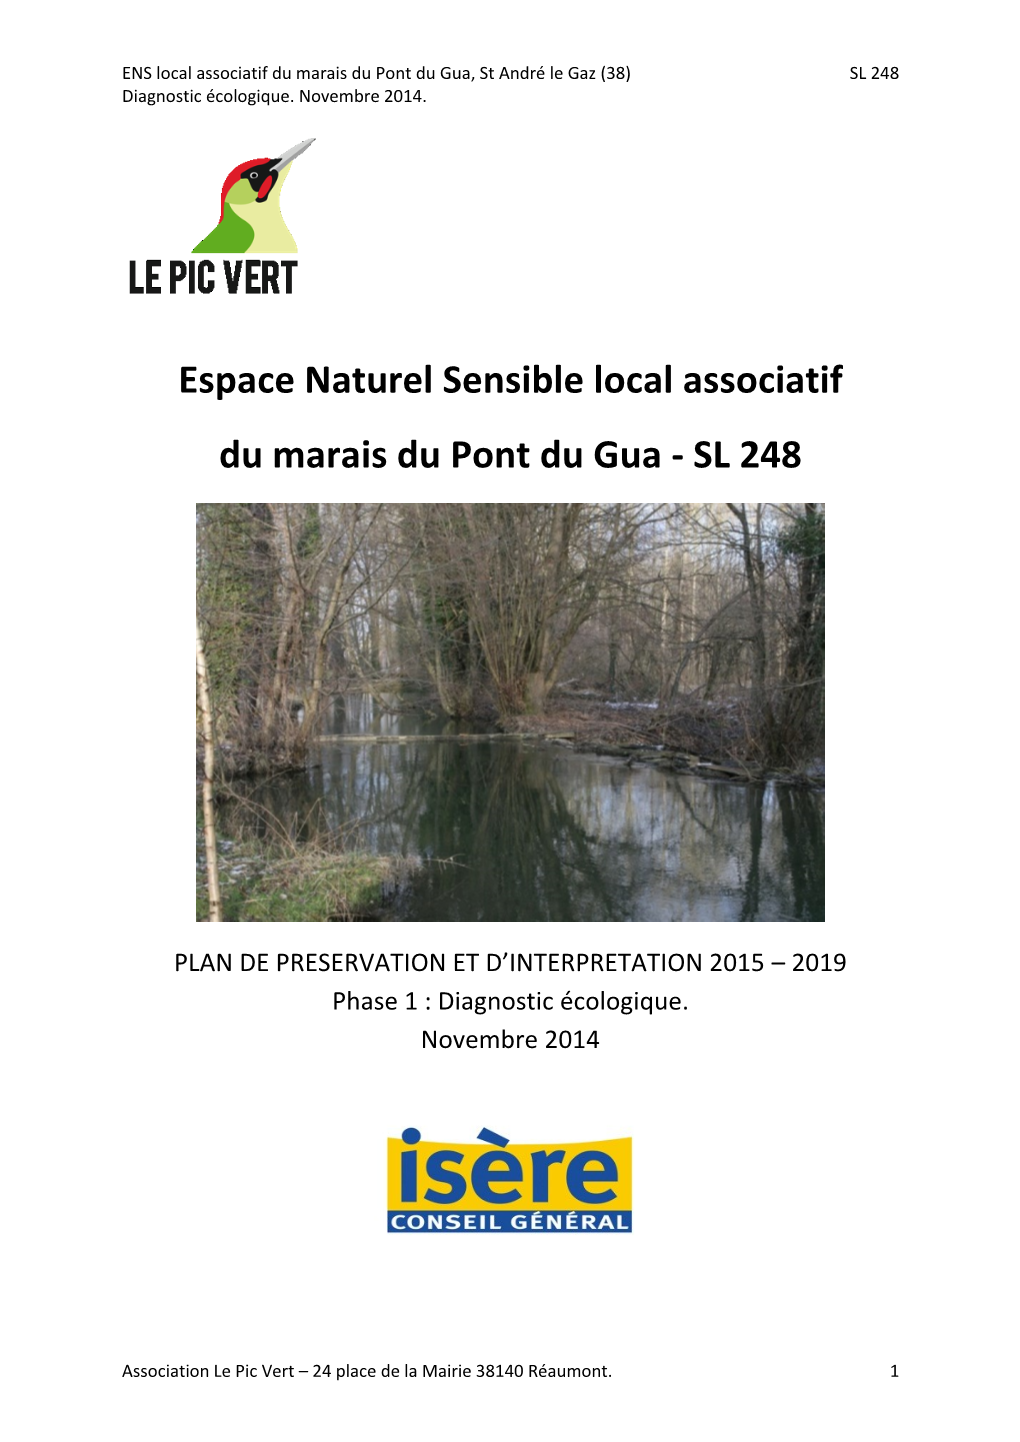 Espace Naturel Sensible Local Associatif Du Marais Du Pont Du Gua - SL 248